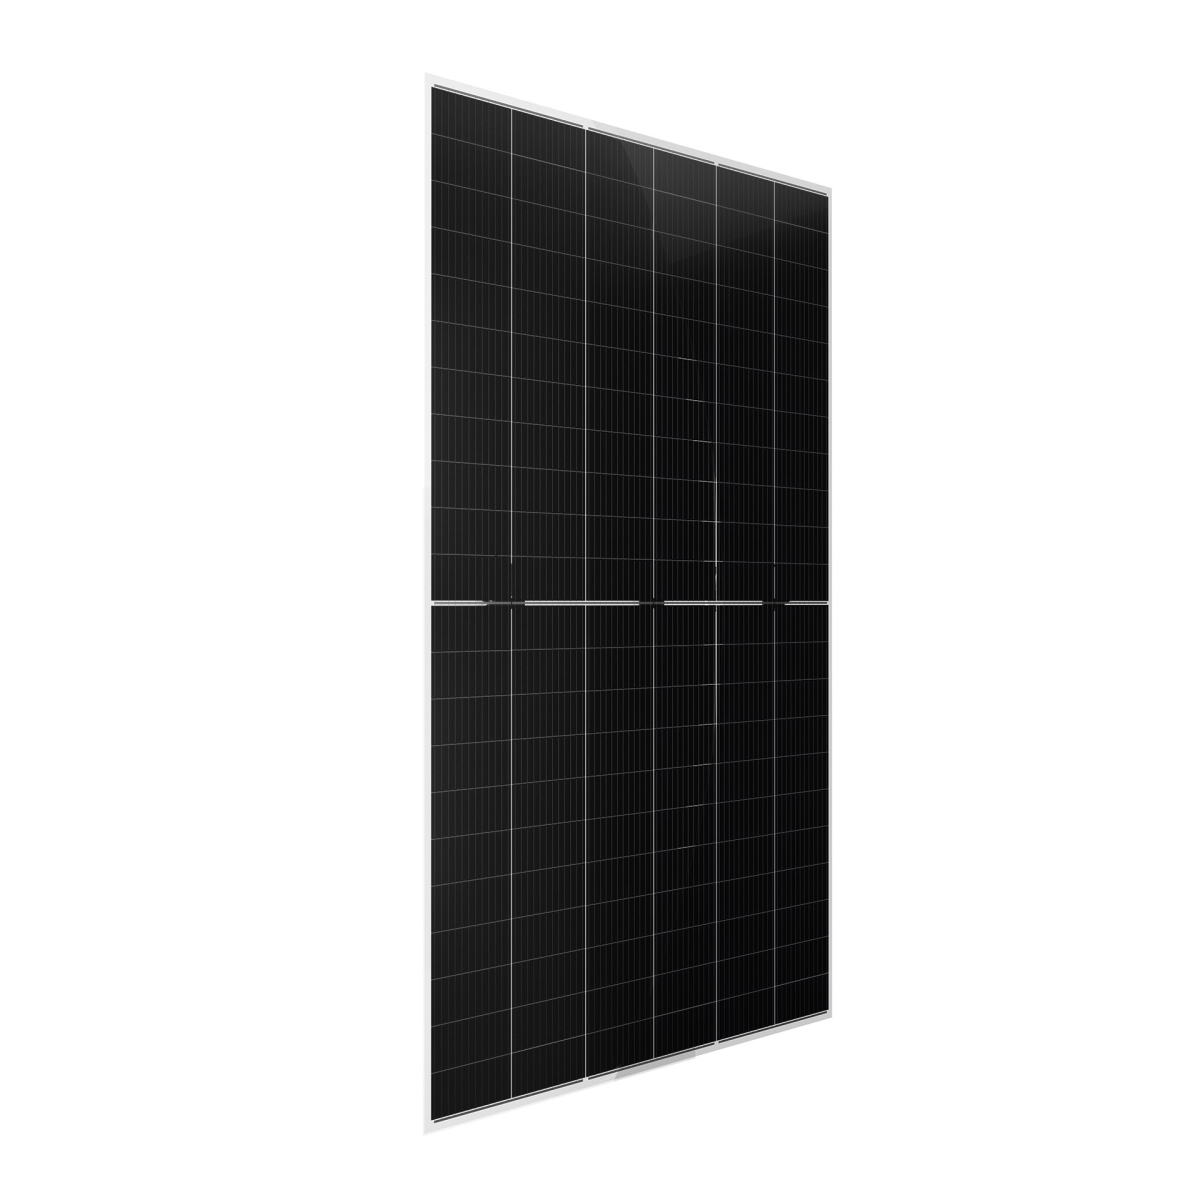 CW Enerji 670Wp M12 132PM Zellen Bifacial G2G Half-Cut MB Solarmodul